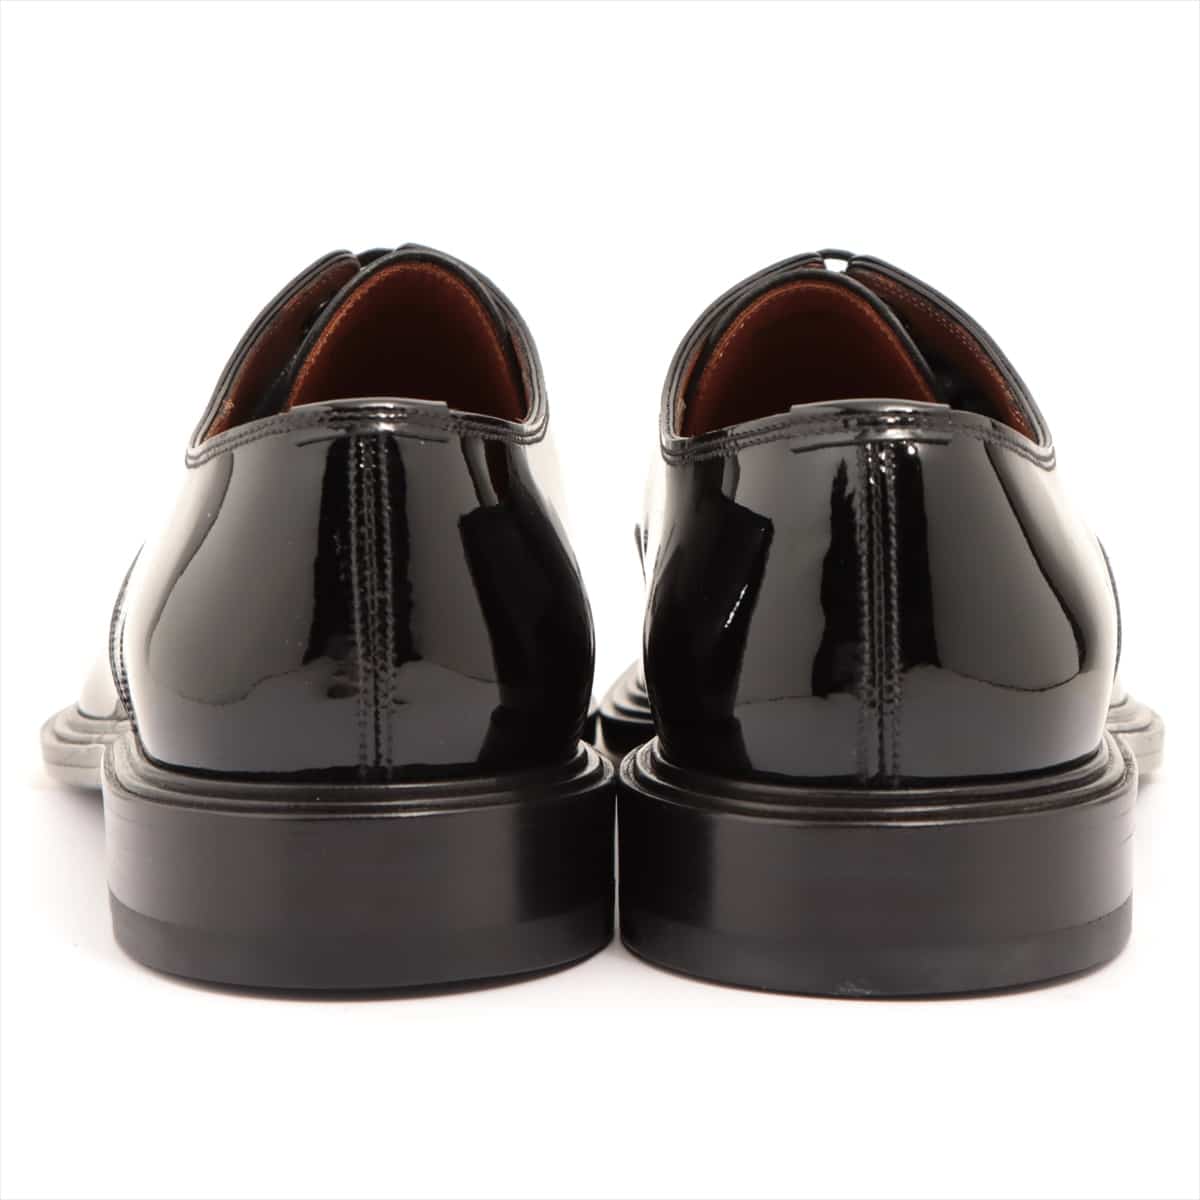 Givenchy Patent leather Dress shoes 41 Men's Black BM8050